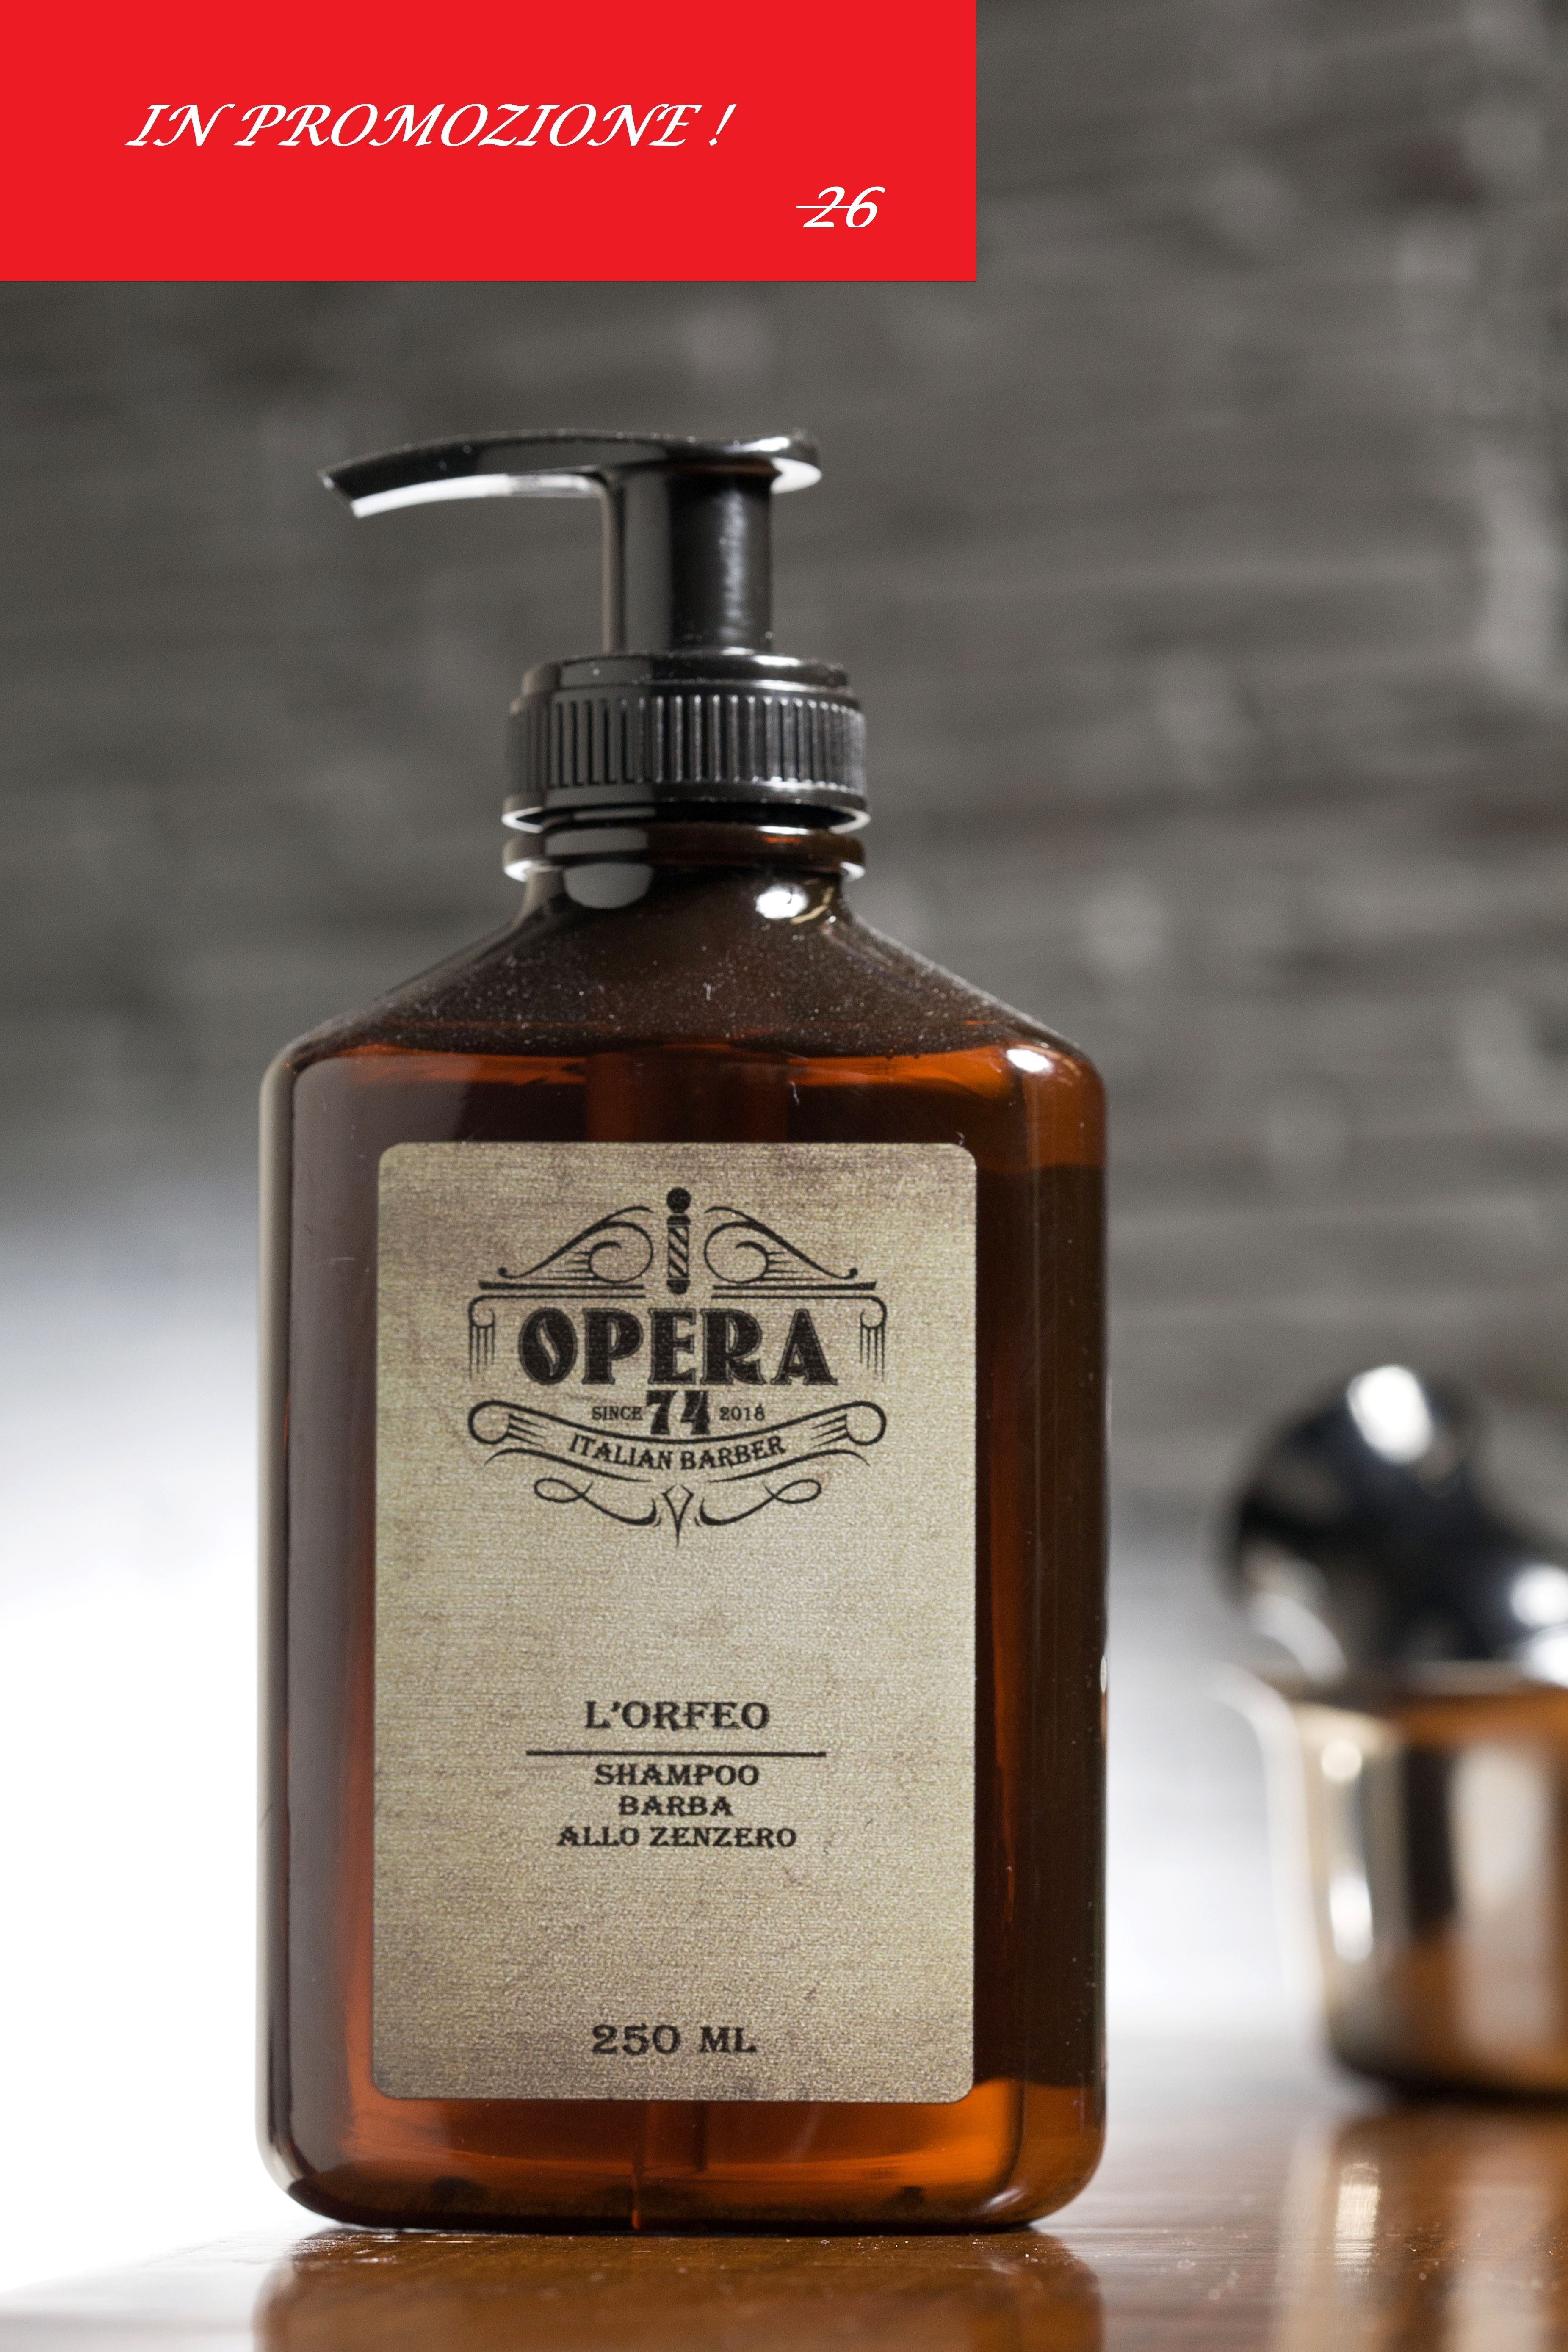 Opera 74 | L'ORFEO - Shampoo barba allo zenzero - 250ml